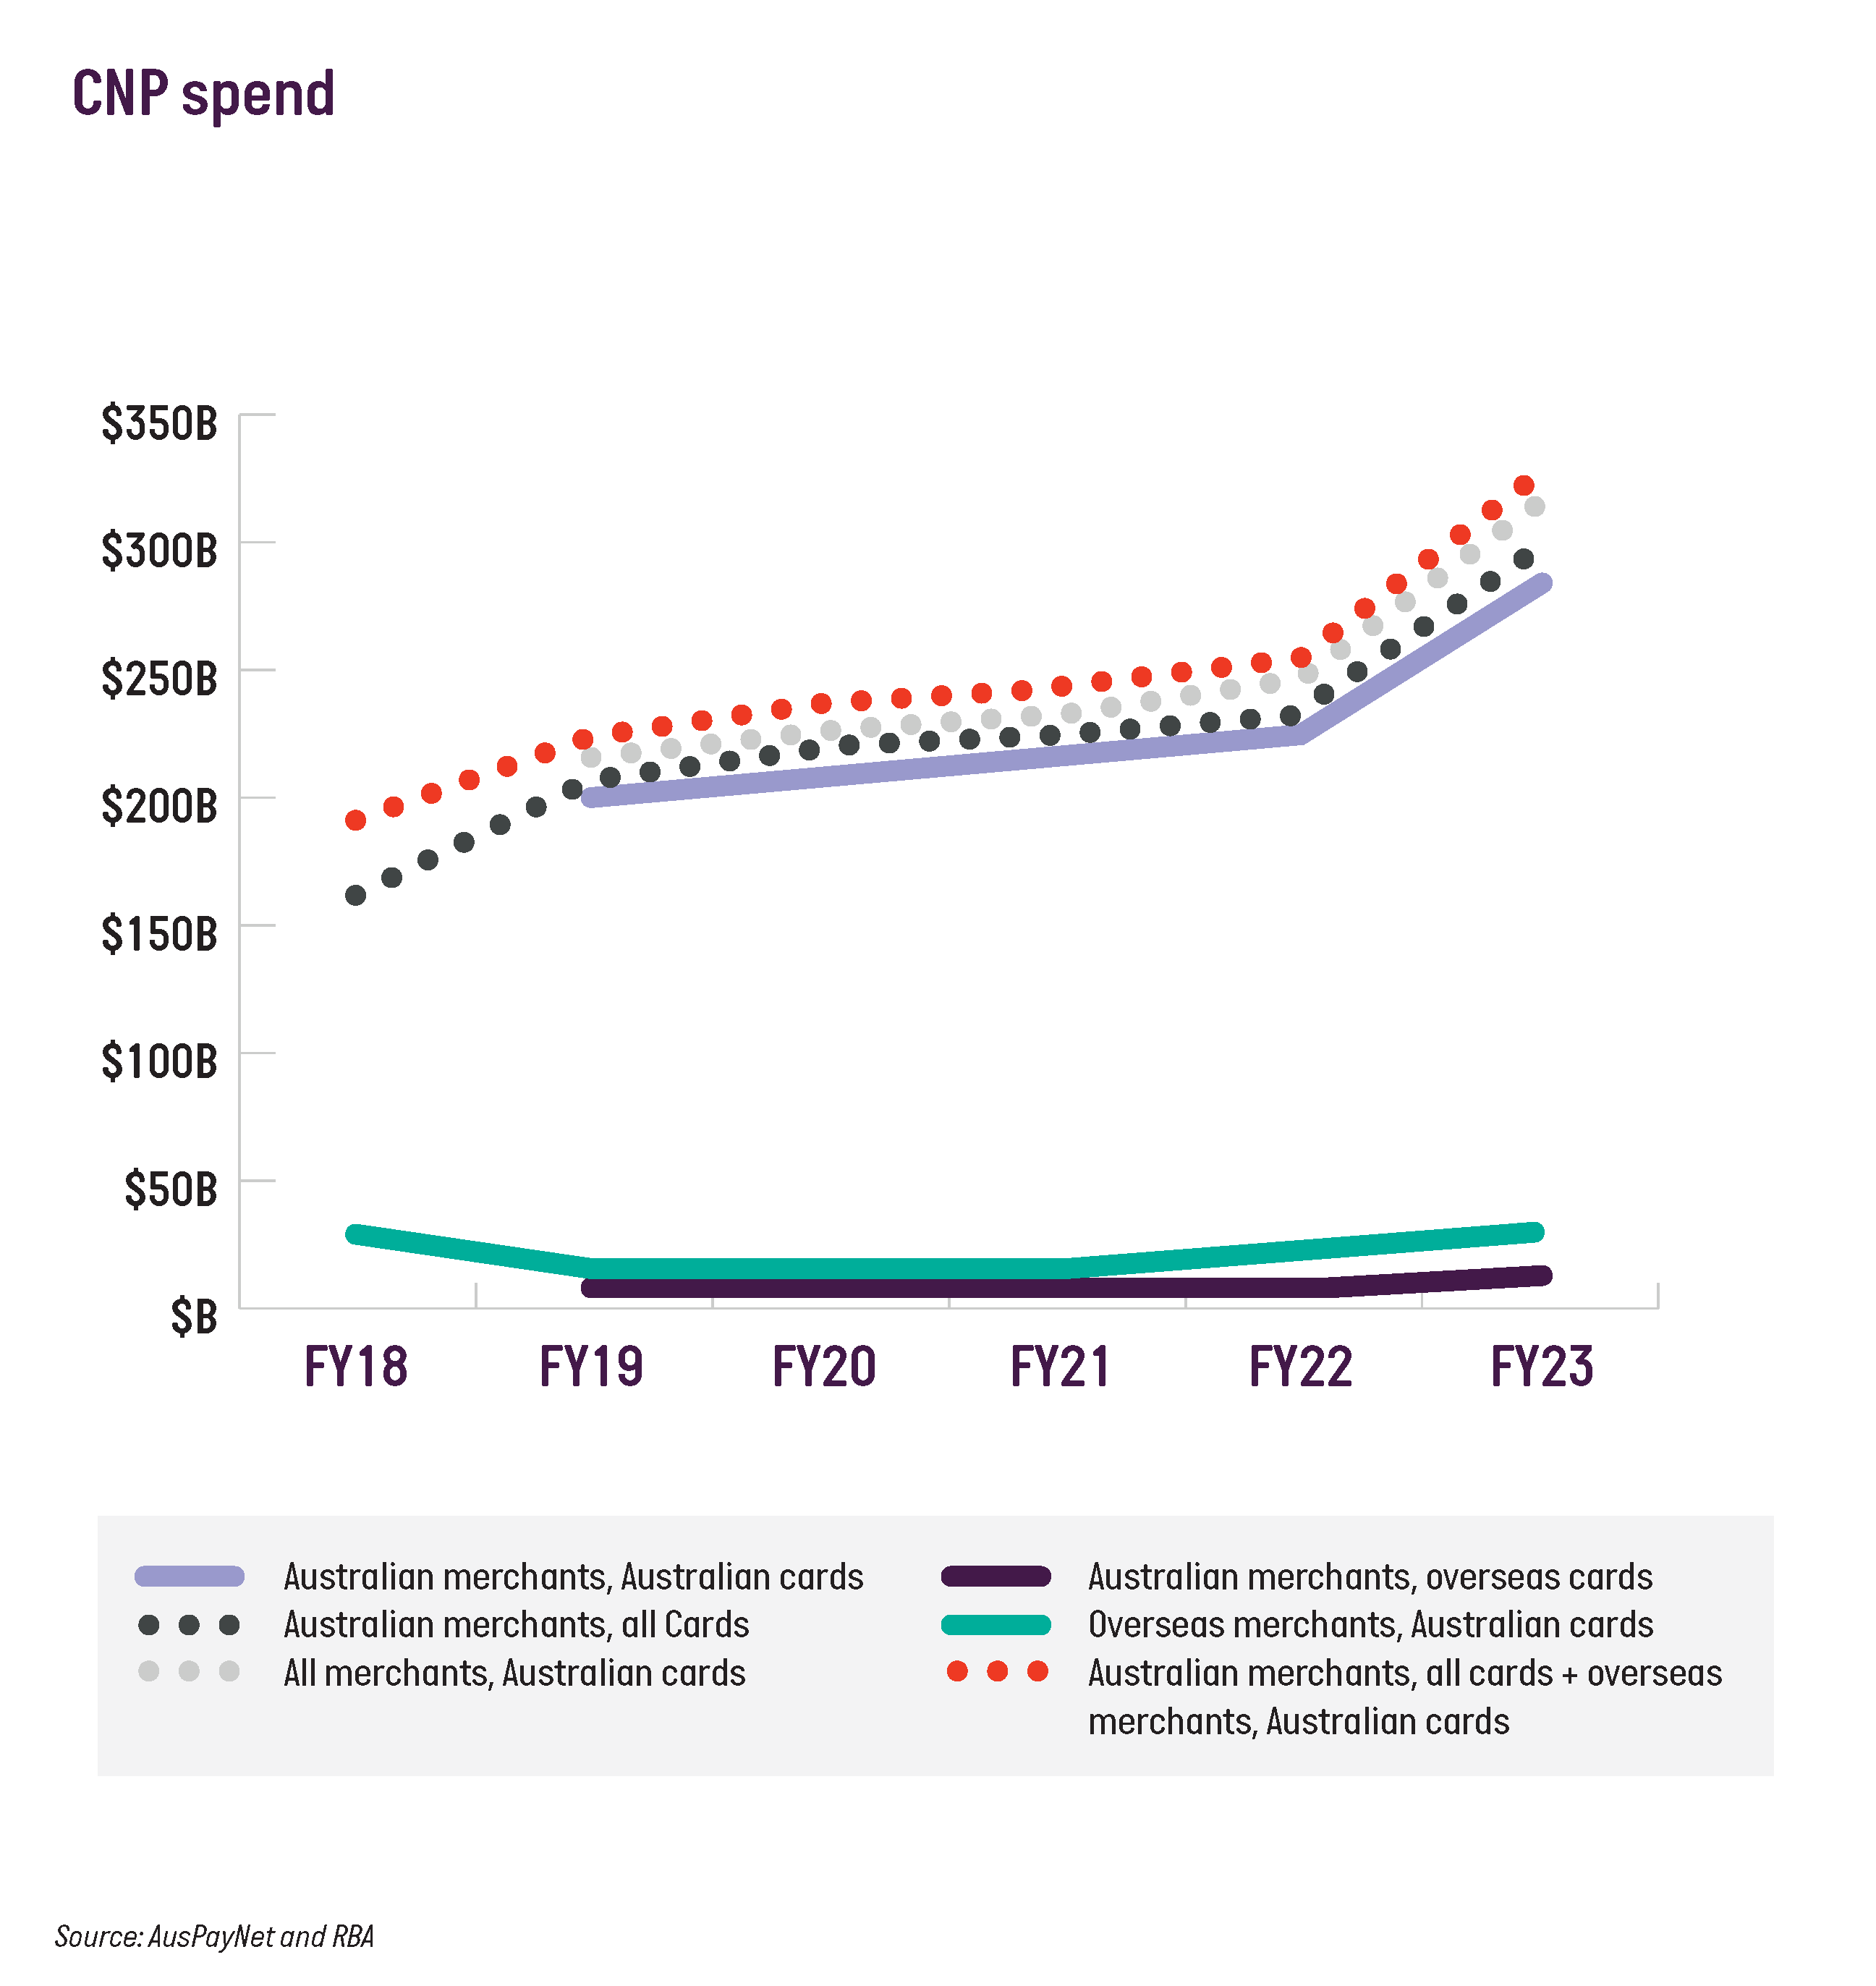 CNP fraud spend